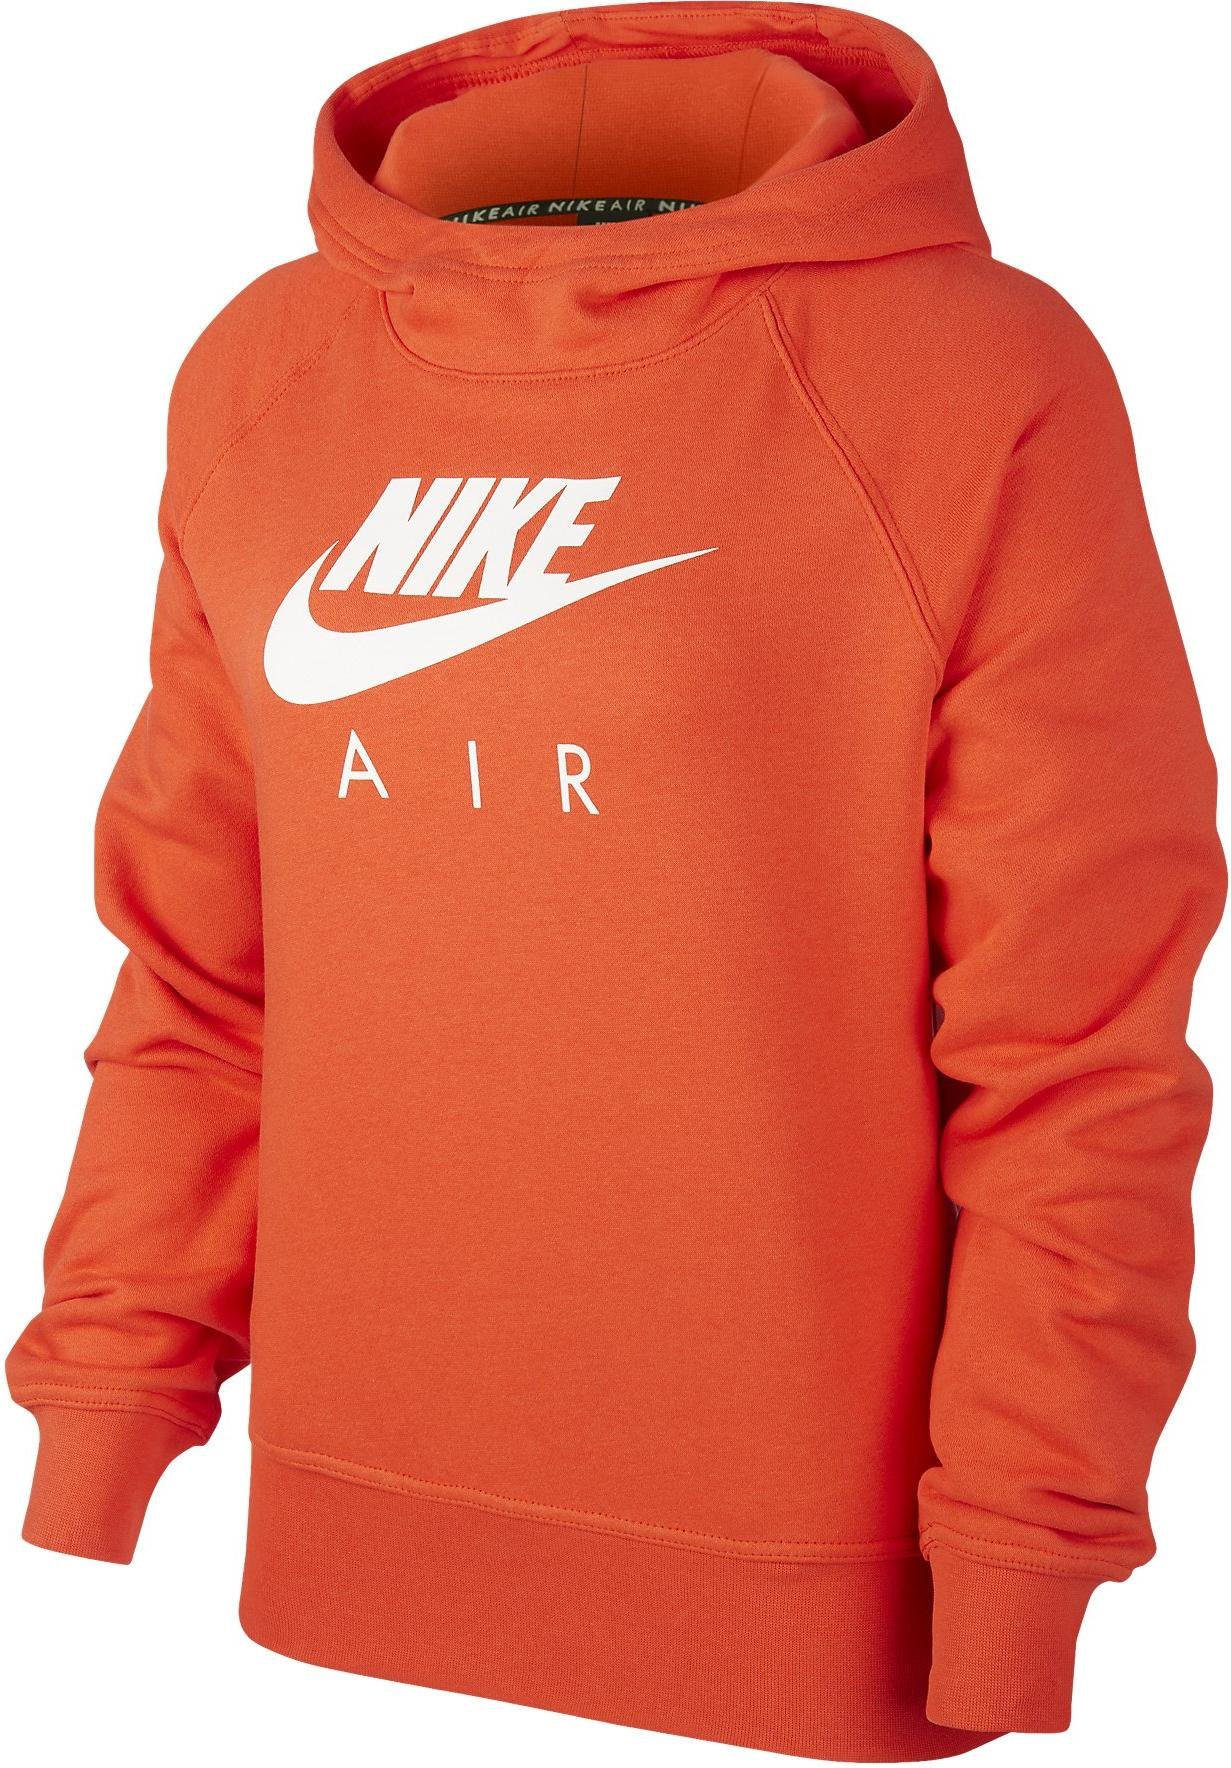 nike air tape overhead hoodie orange